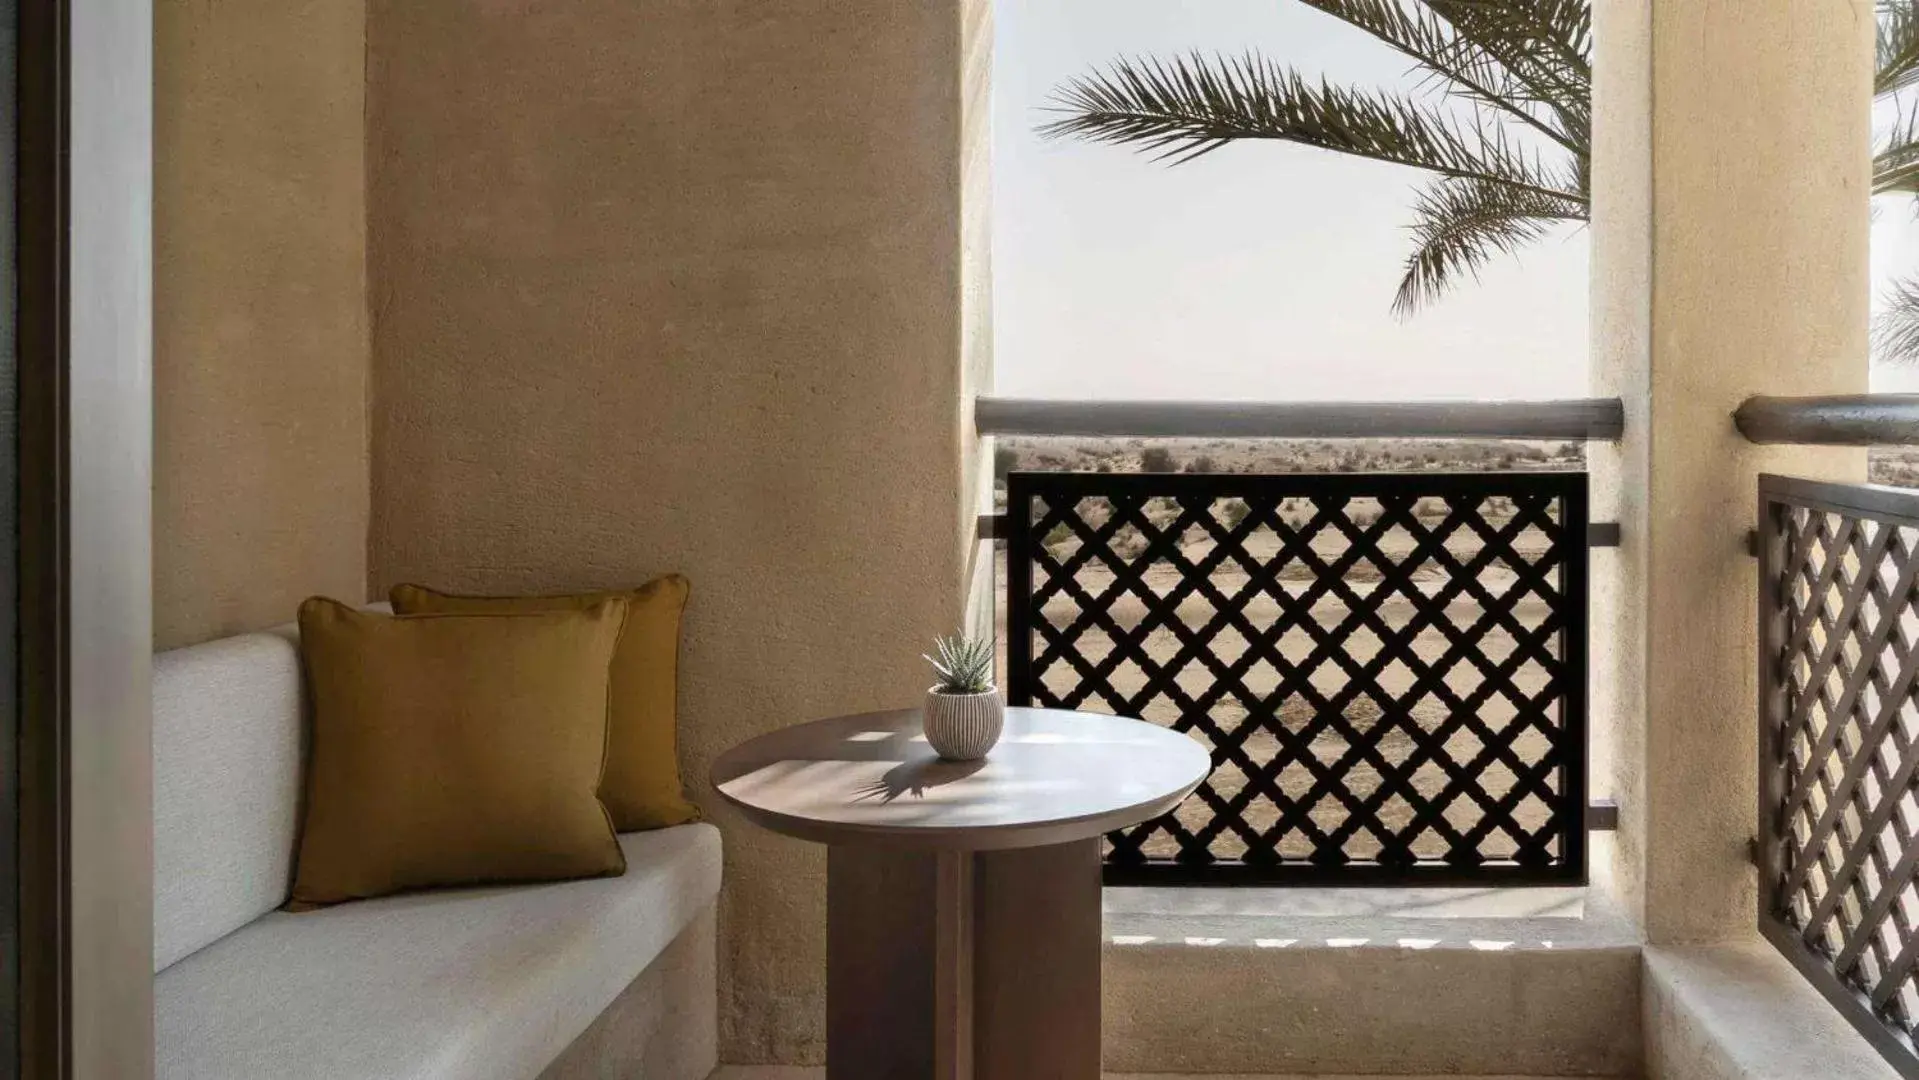 Bedroom in Bab Al Shams, A Rare Finds Desert Resort, Dubai